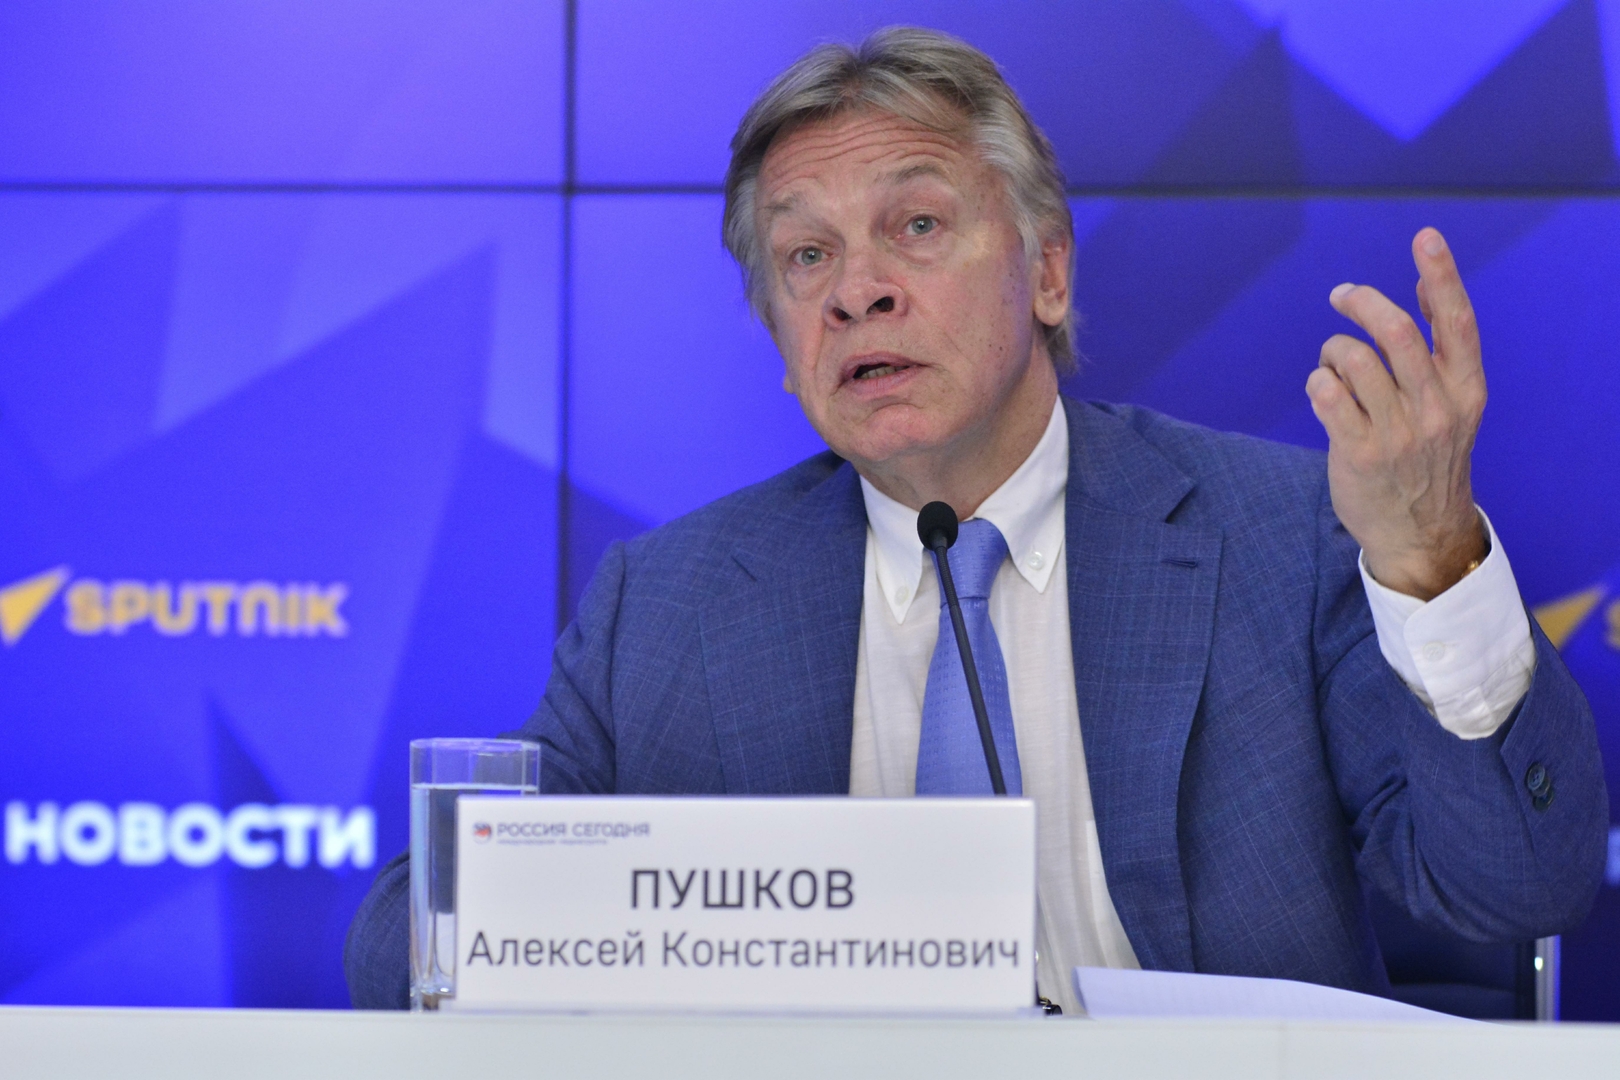 العضو في مجلس الاتحاد الروسي أليكسي بوشكوف